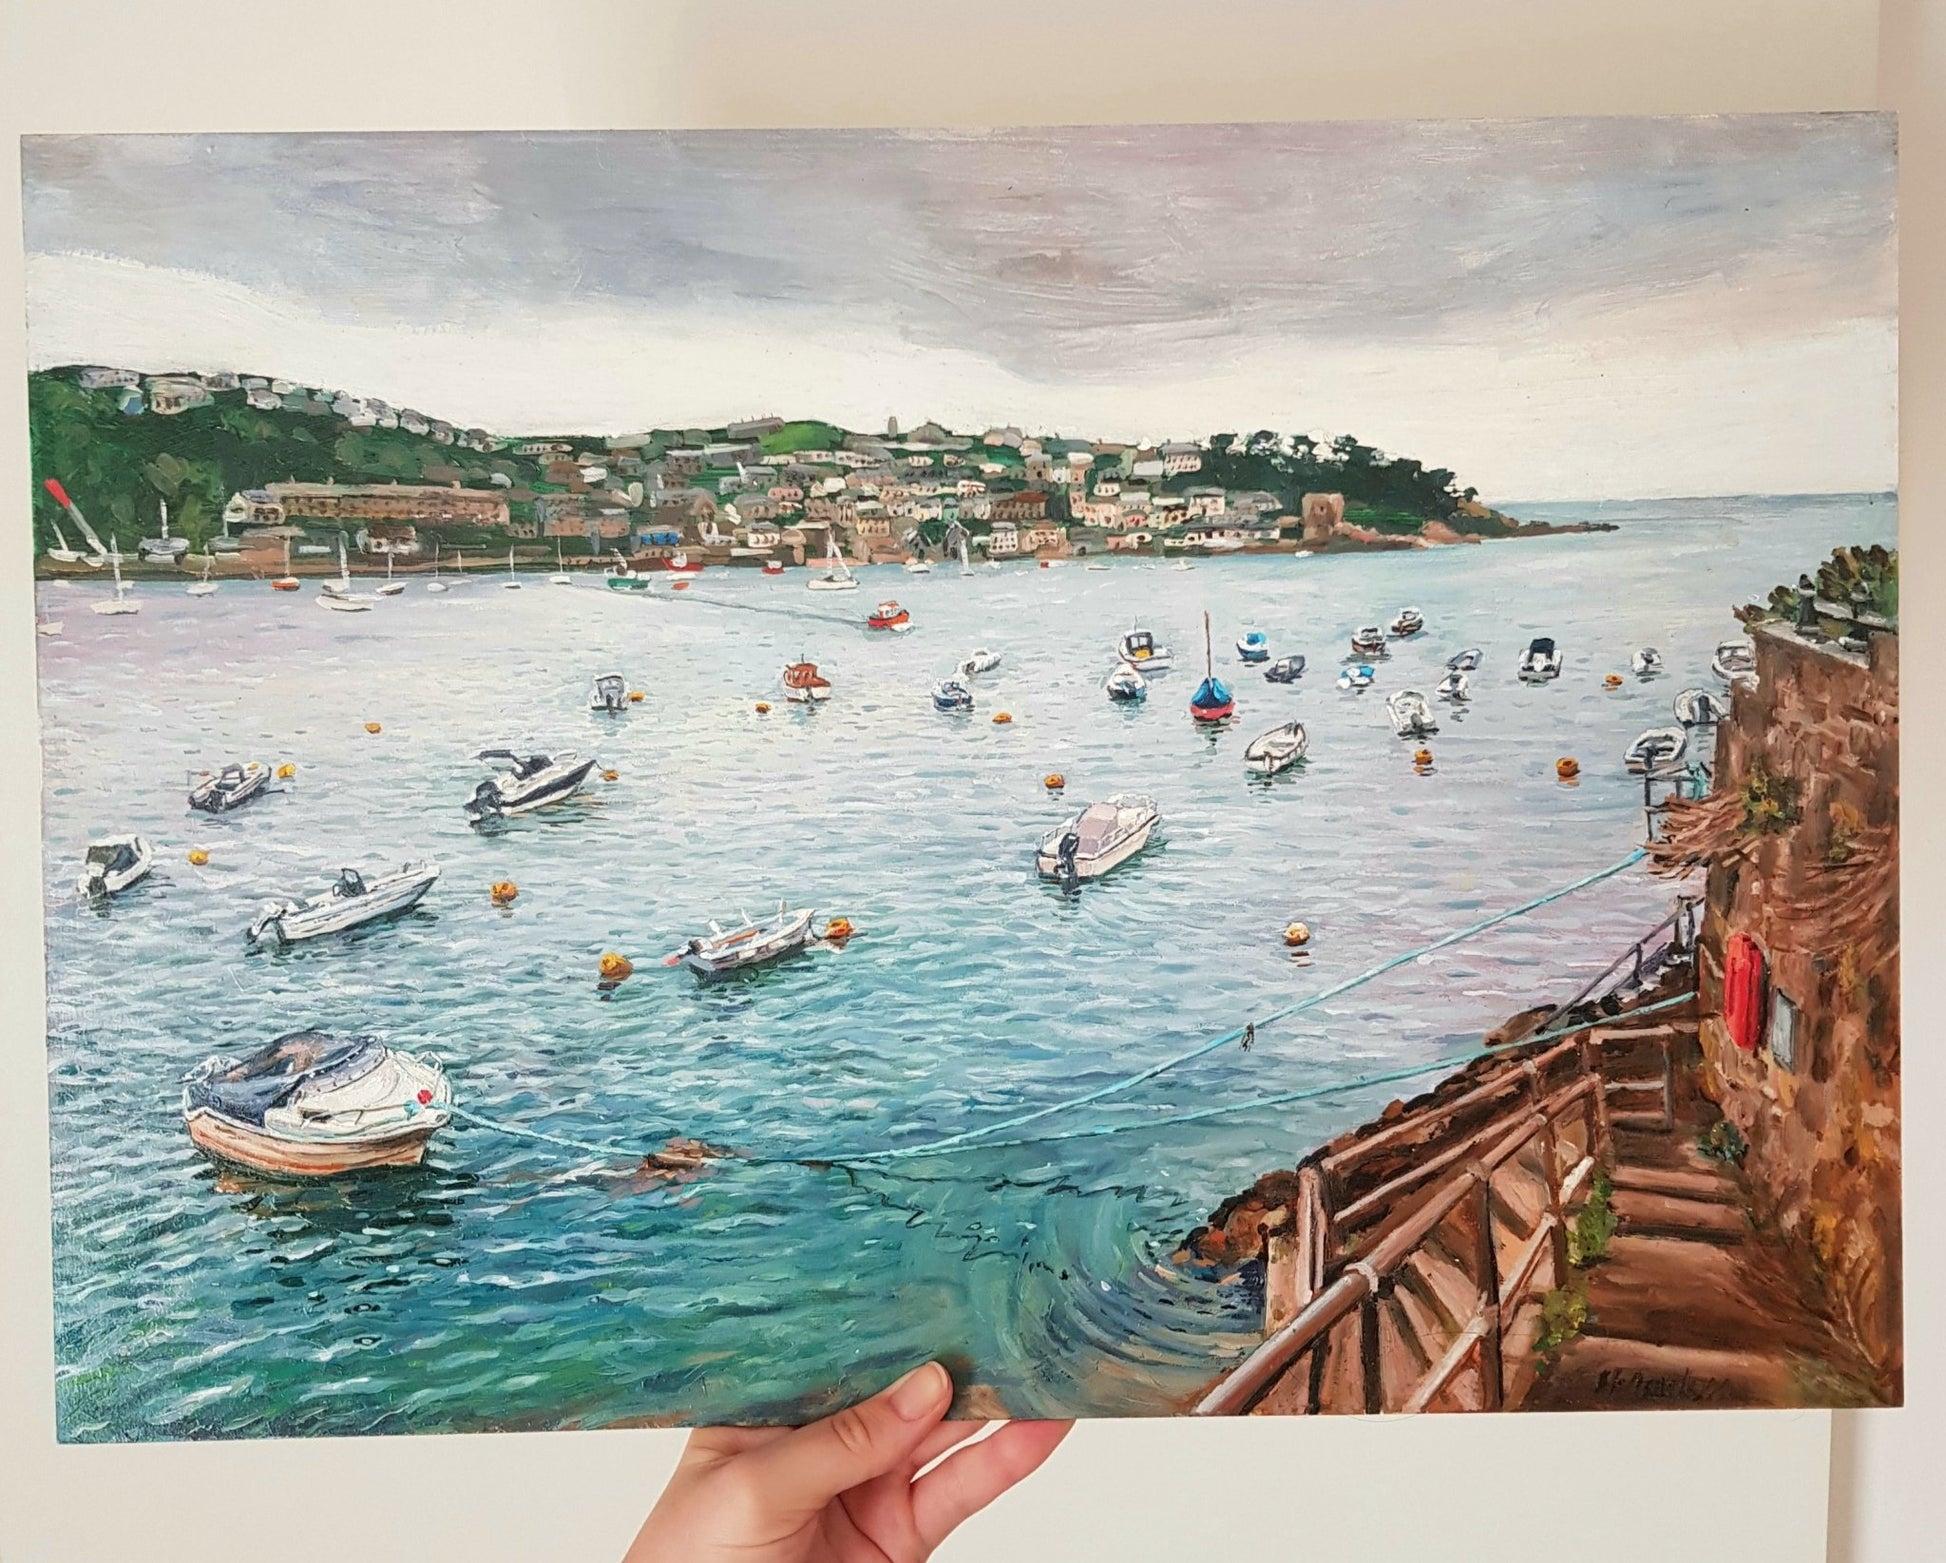 Fowey Harbour, Cornwall | Original Painting Original Paintings Harriet Lawless Artist england